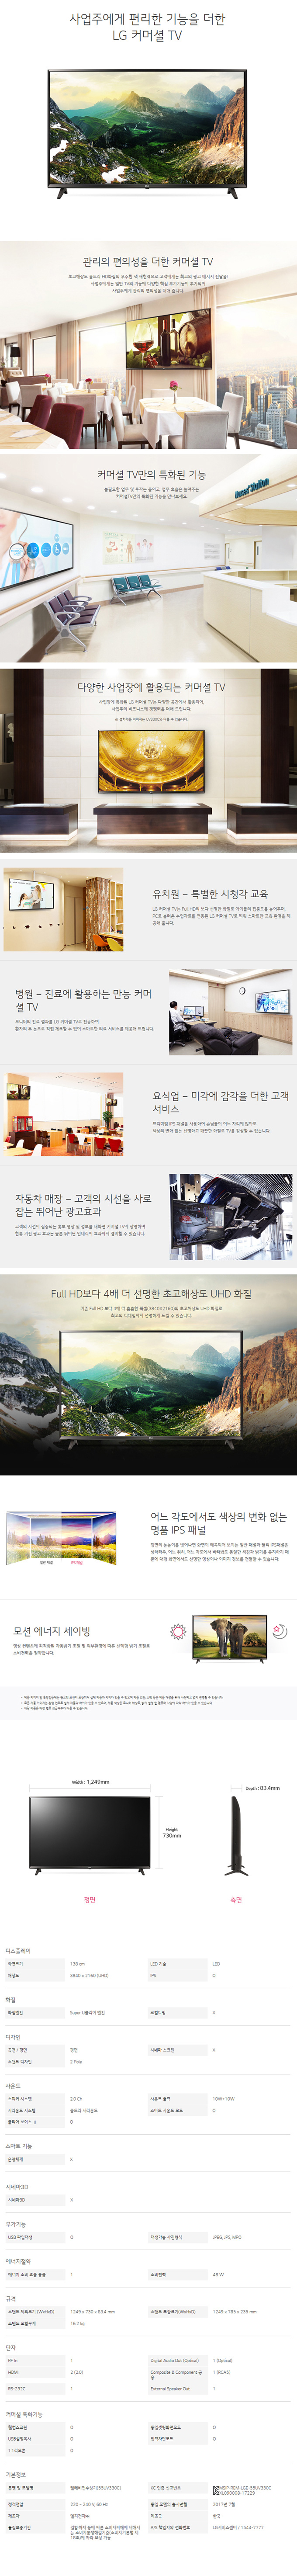 딜라이브 - LG 55인치 UHD TV (55UK861C) 상세보기